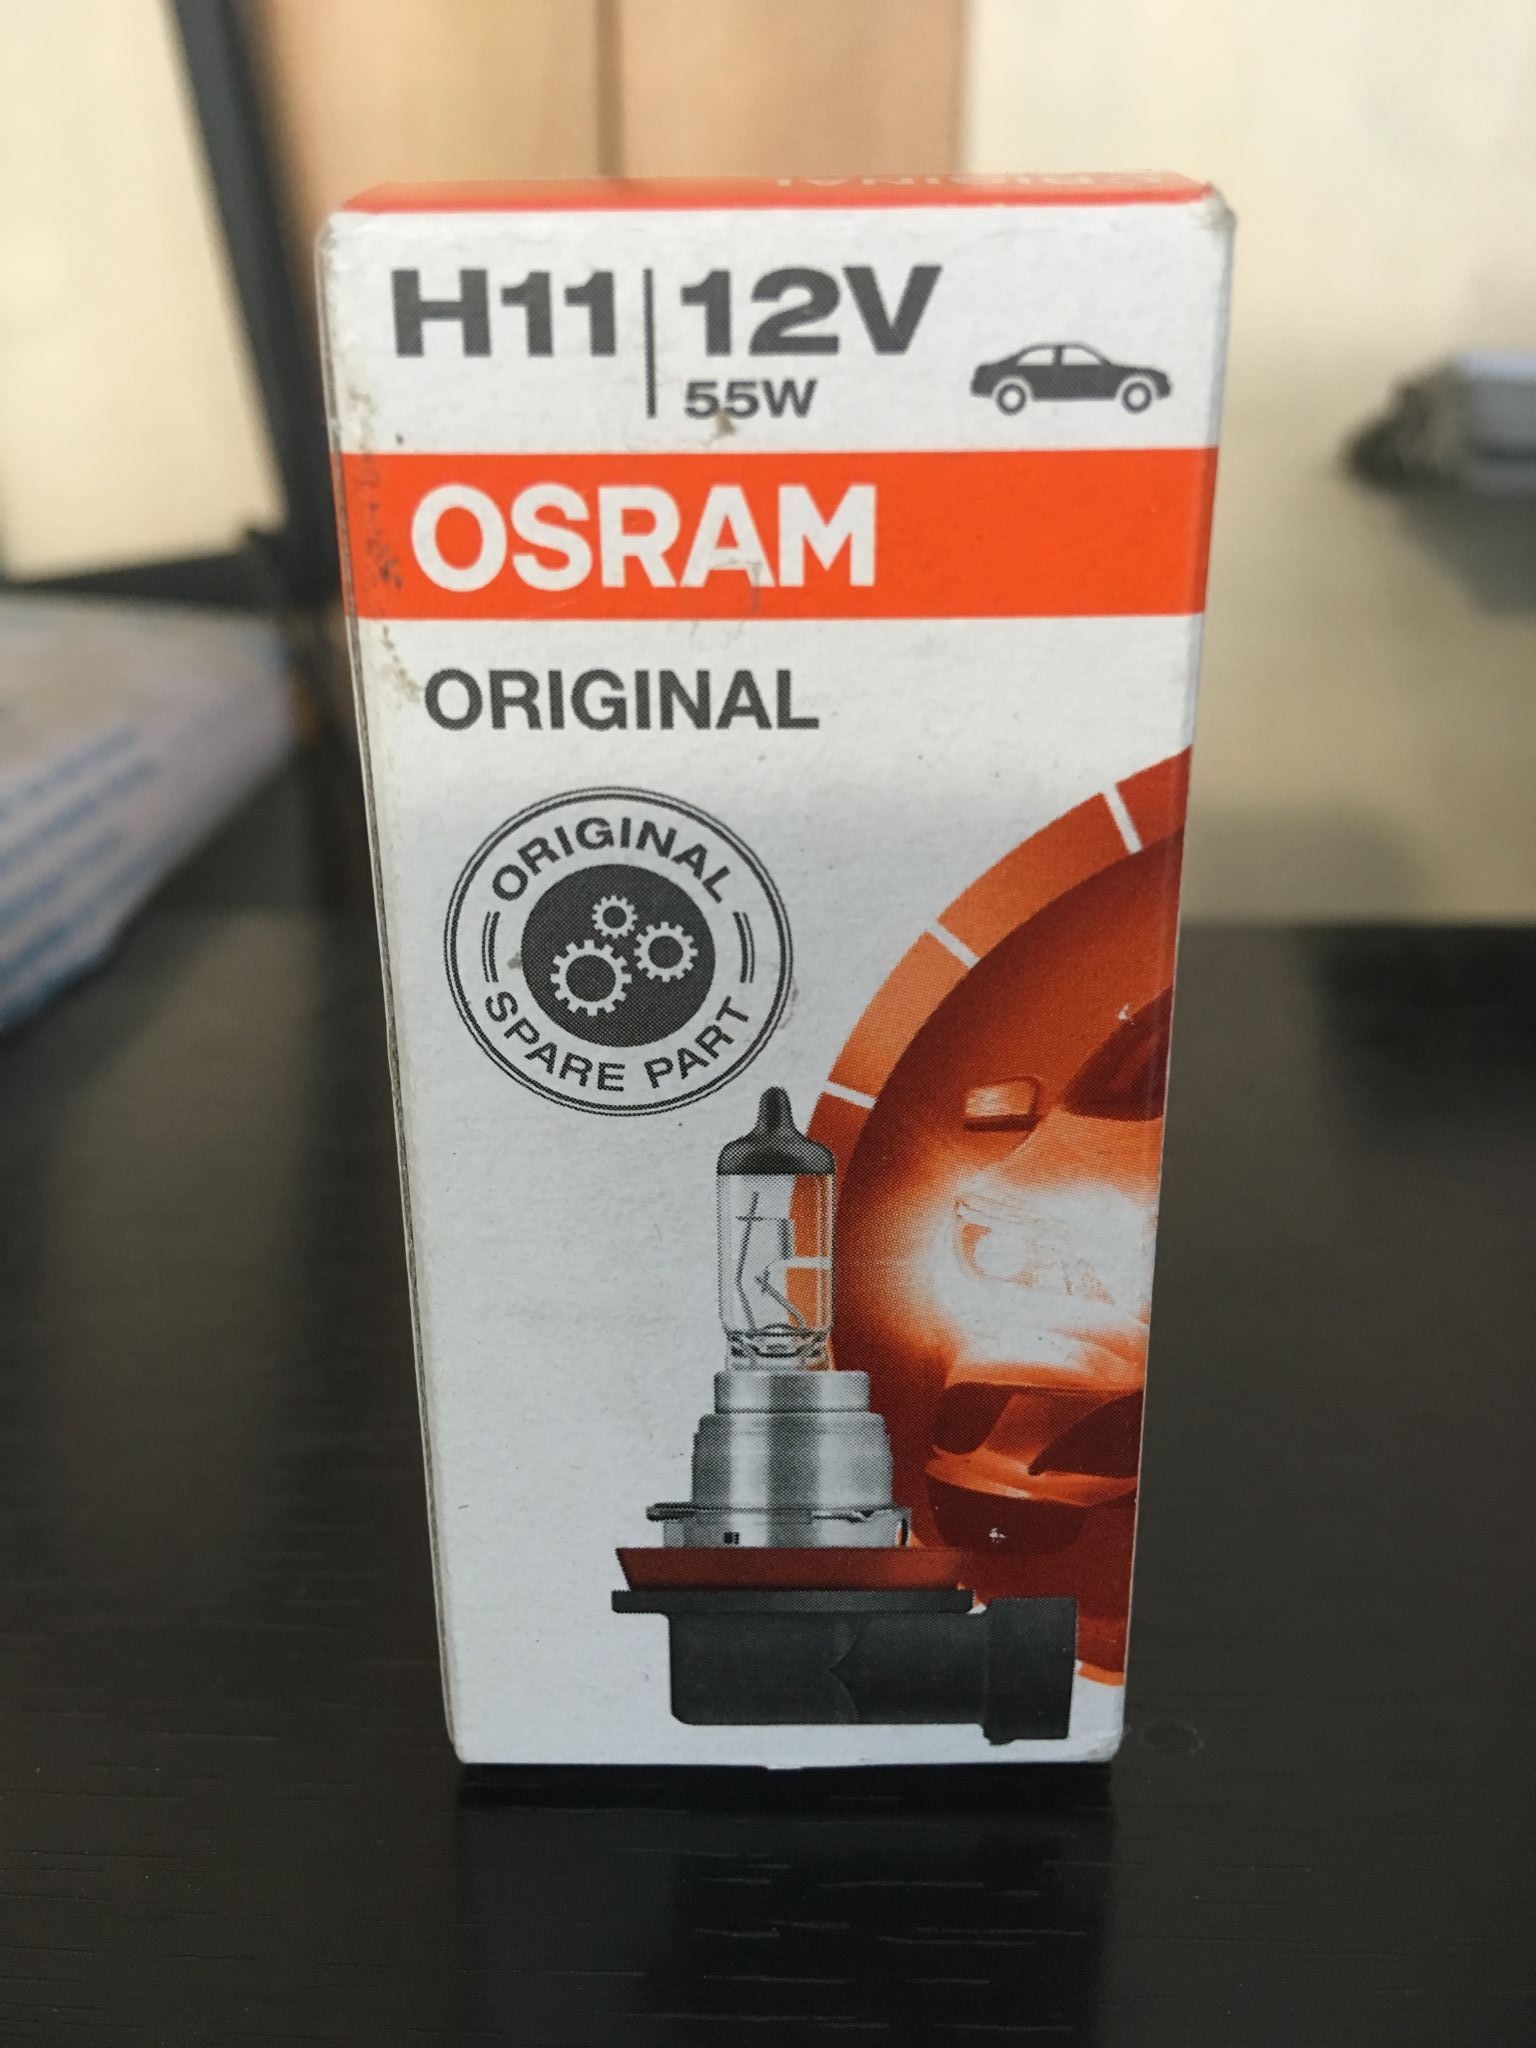 Osram h11 12v 55w